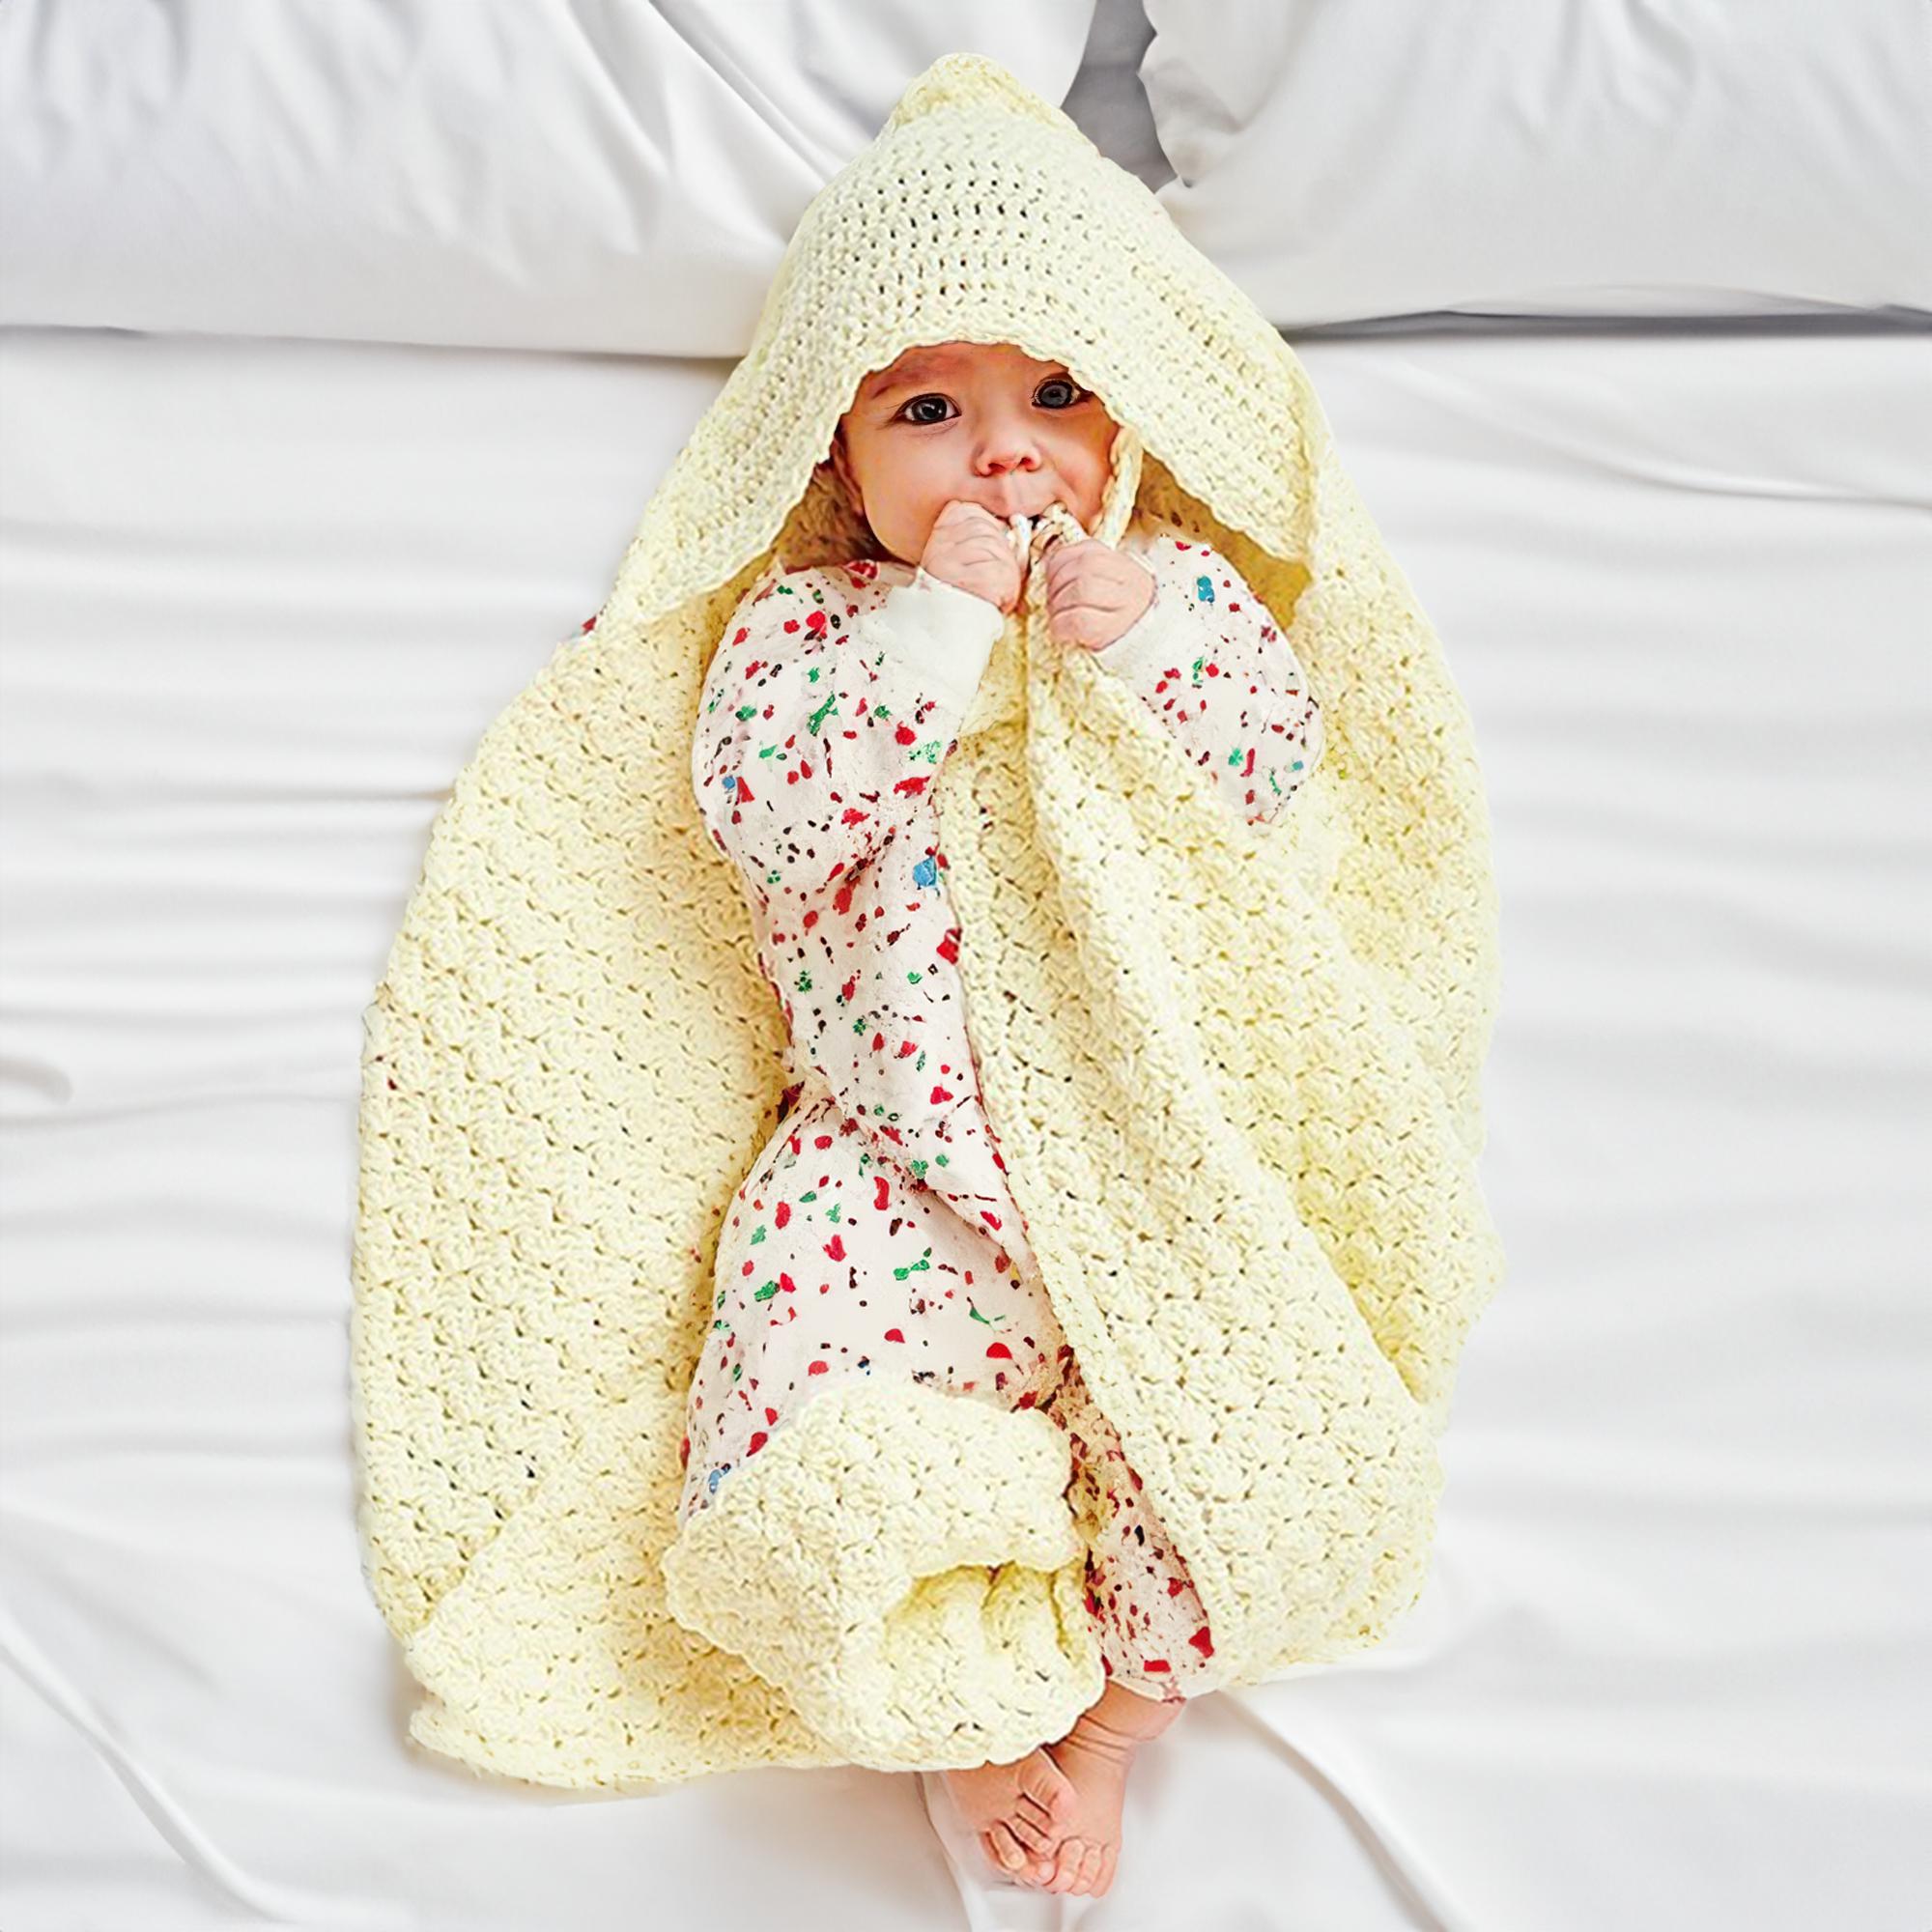 Buttercream Hooded Baby Blanket/Swaddle